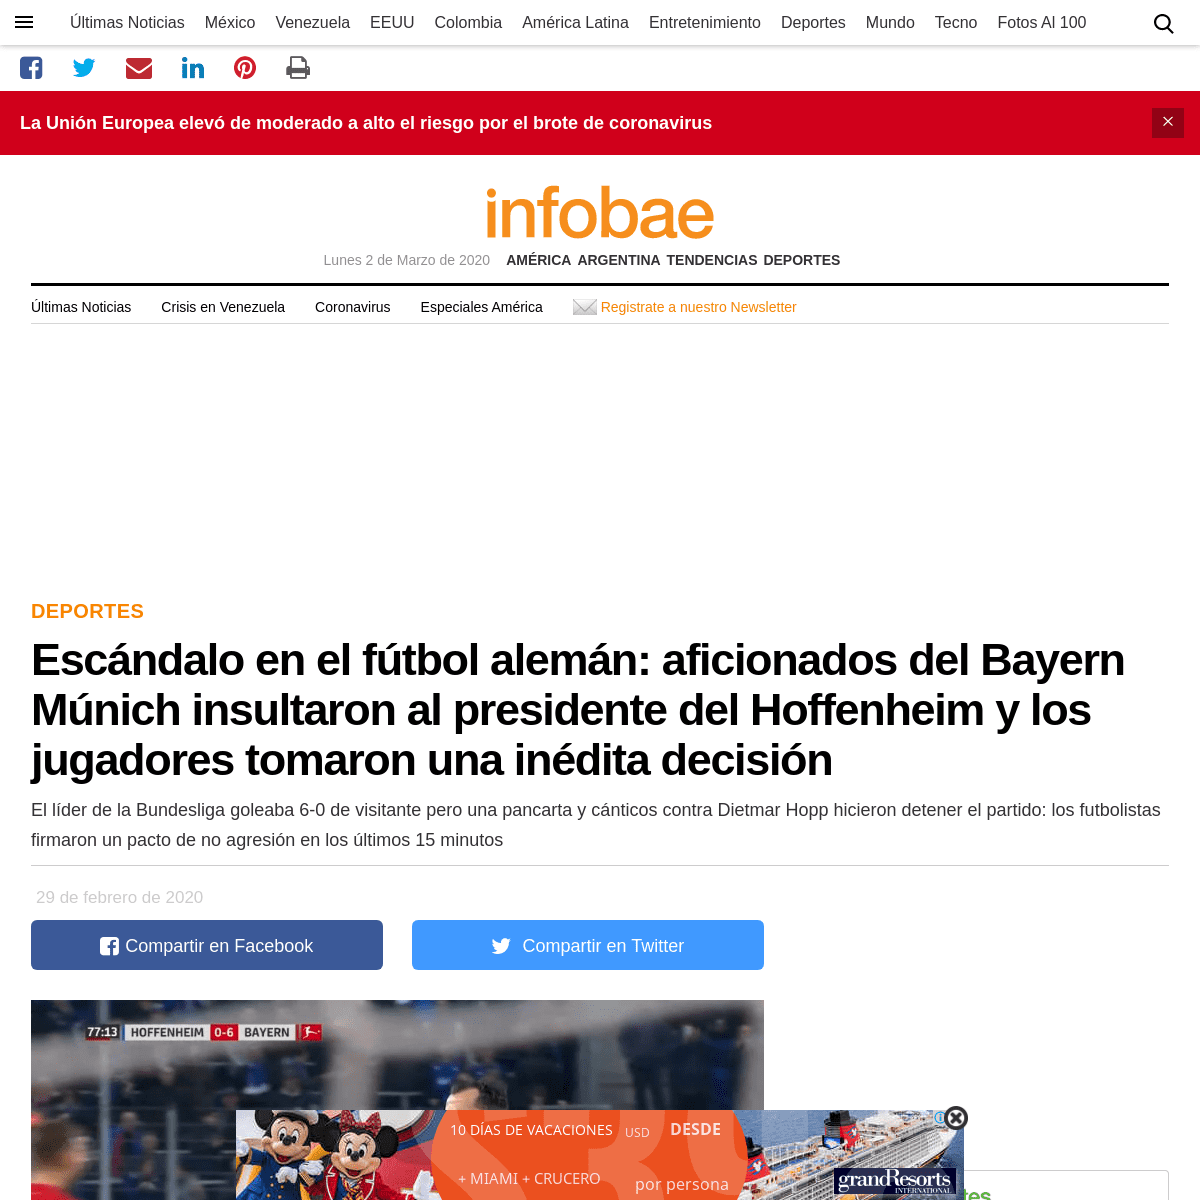 A complete backup of www.infobae.com/america/deportes/2020/02/29/escandalo-en-el-futbol-aleman-aficionados-del-bayern-munich-ins